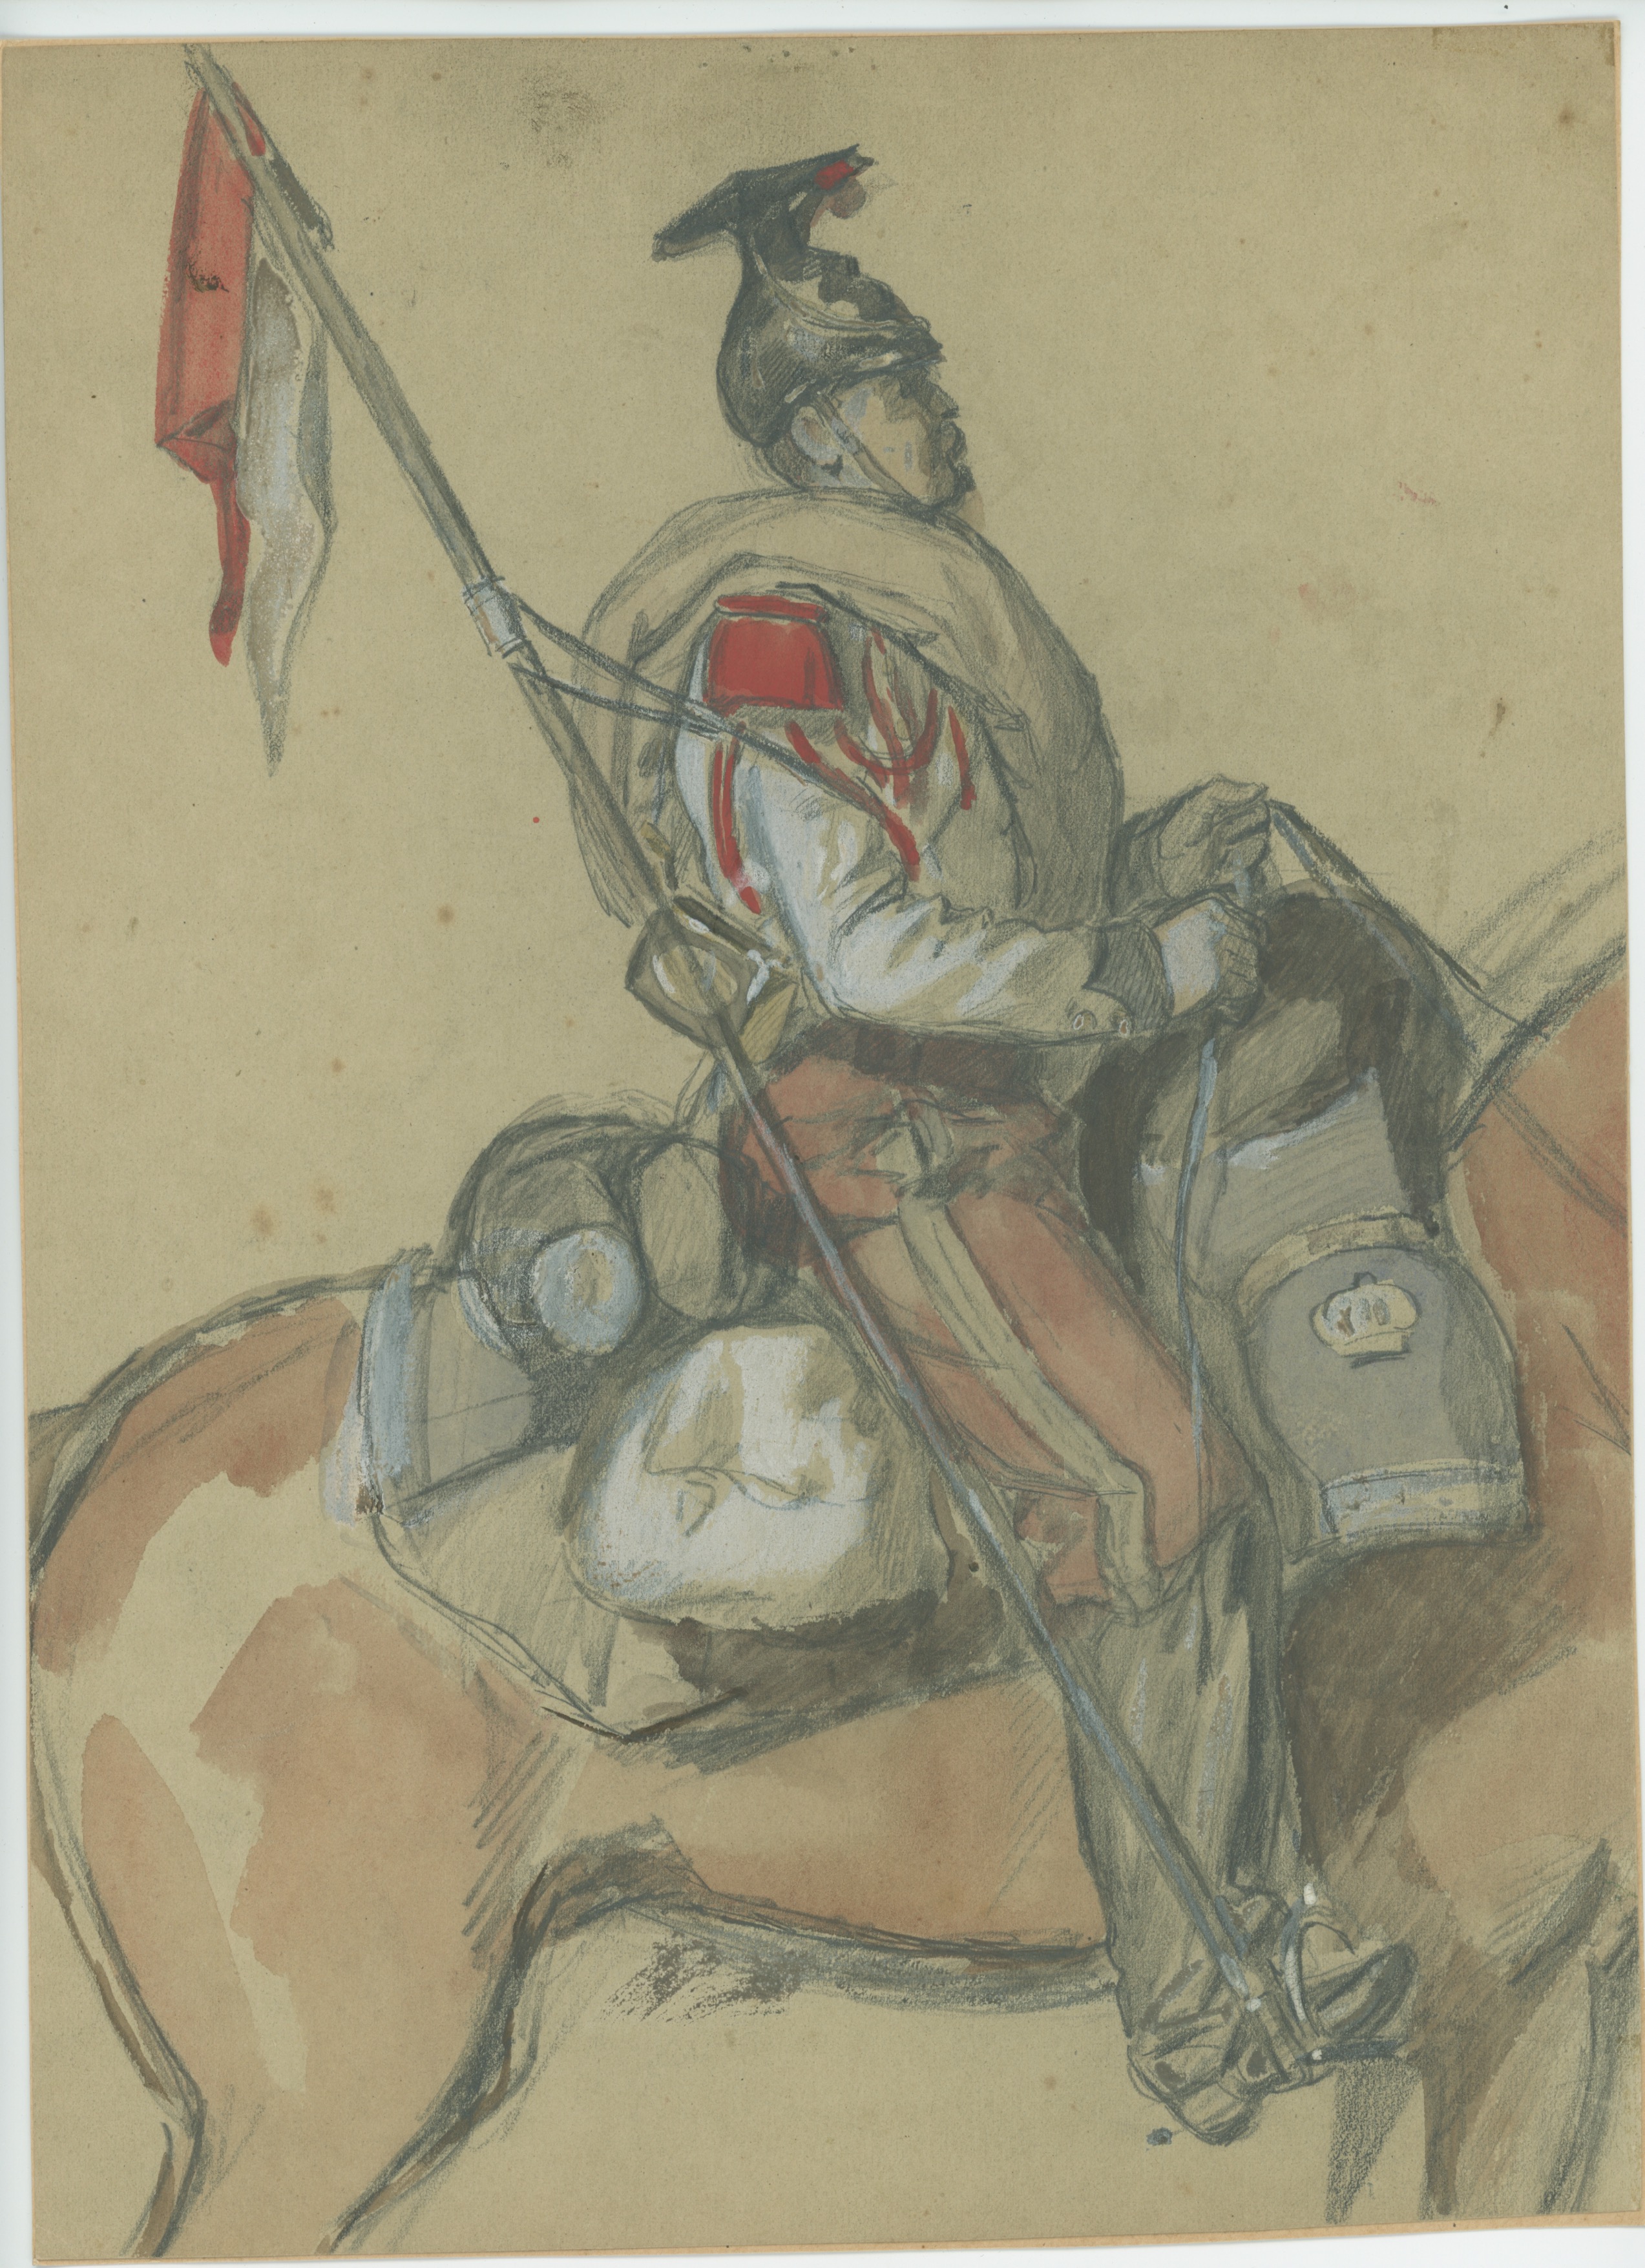 Dessin crayon rehaussé couleurs - Lancier de la Garde - 1860 - Uniforme - Second Empire - Napoléon III - 1870